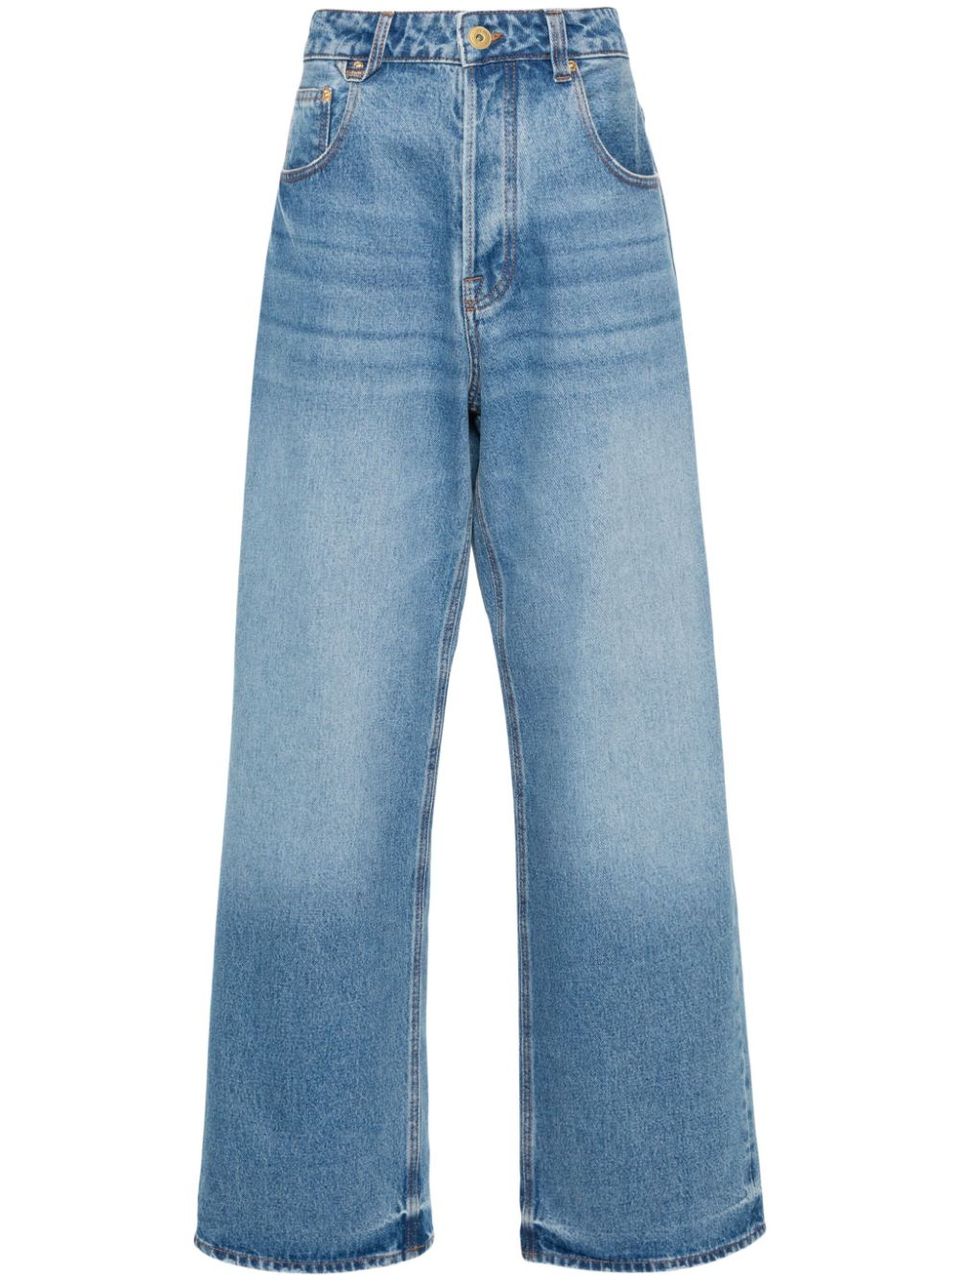 'Le de-Nimes Large' jeans